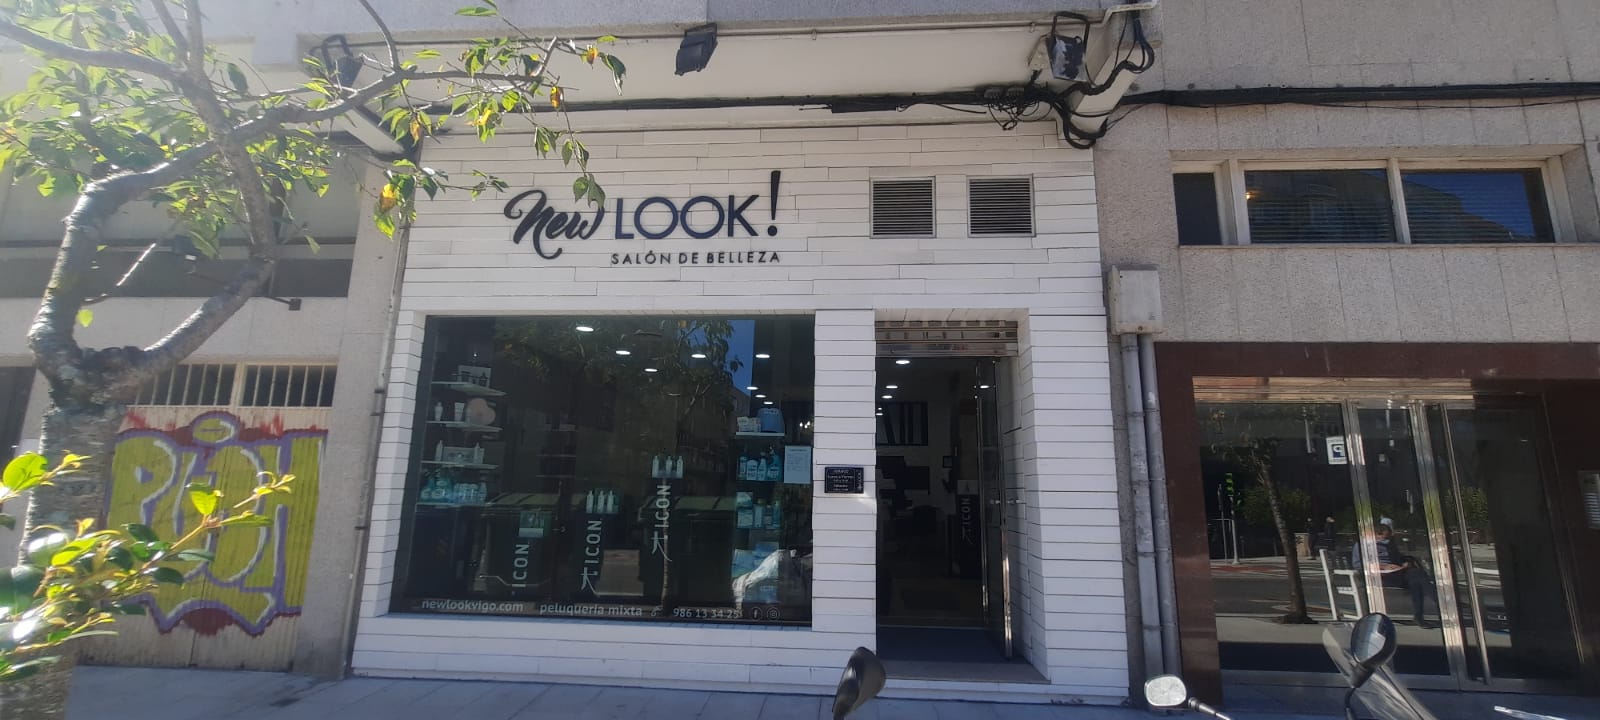 Nueva tienda New Look Vigo